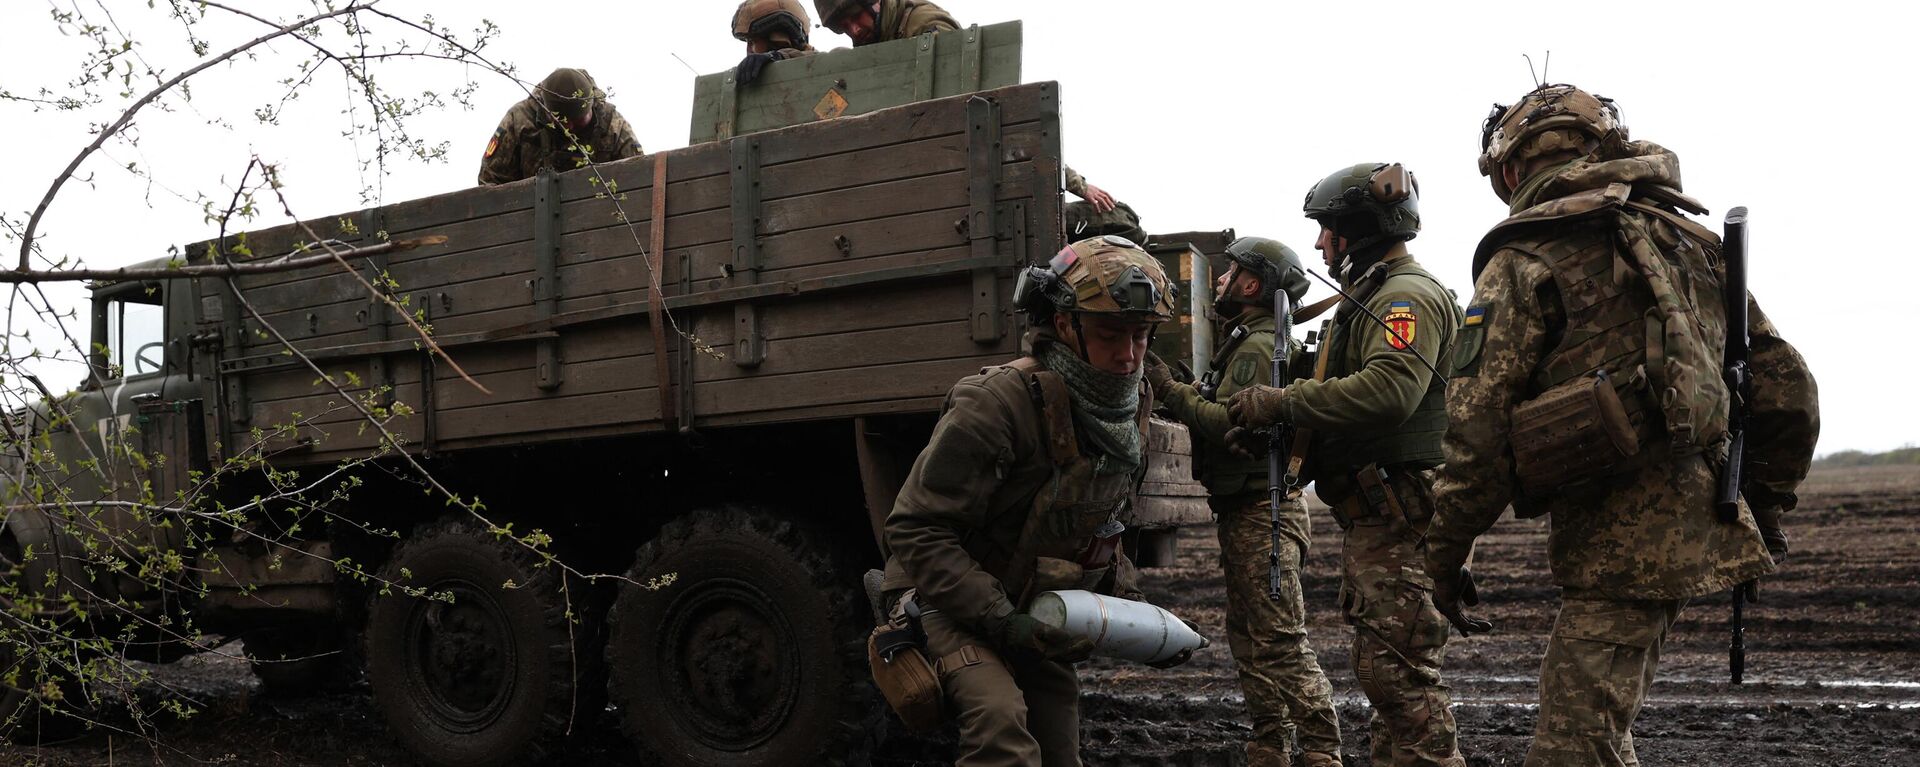 Soldados ucranianos trabajan con equipos de artillería en un frente cercano a Artiómovsk, en la región de Donetsk, en 2023 - Sputnik Mundo, 1920, 22.06.2023